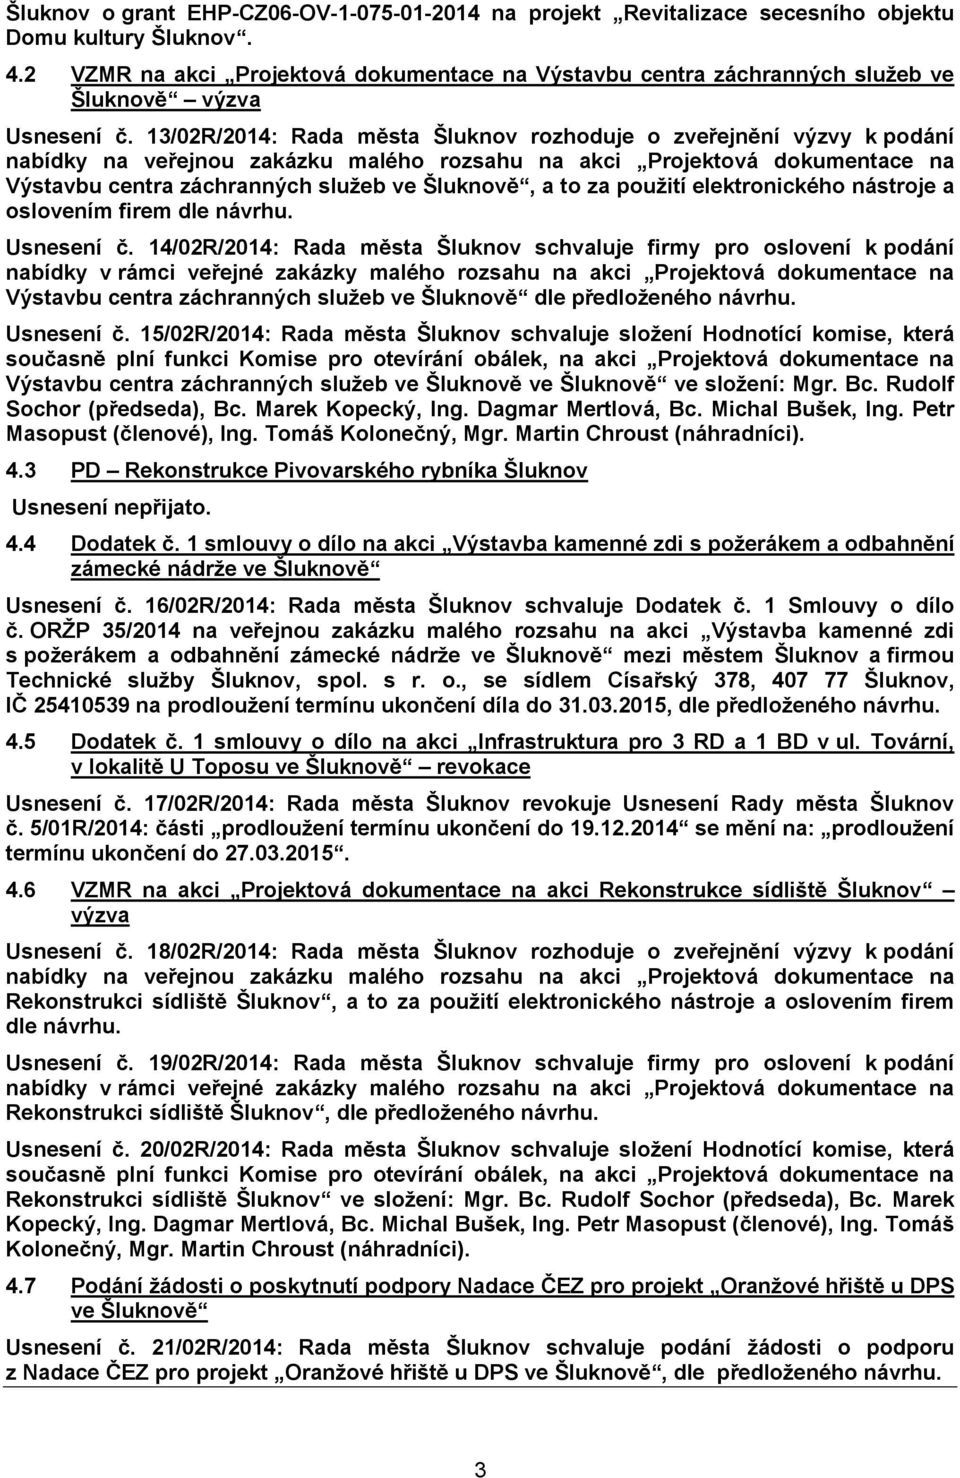 13/02R/2014: Rada města Šluknov rozhoduje o zveřejnění výzvy k podání nabídky na veřejnou zakázku malého rozsahu na akci Projektová dokumentace na Výstavbu centra záchranných služeb ve Šluknově, a to